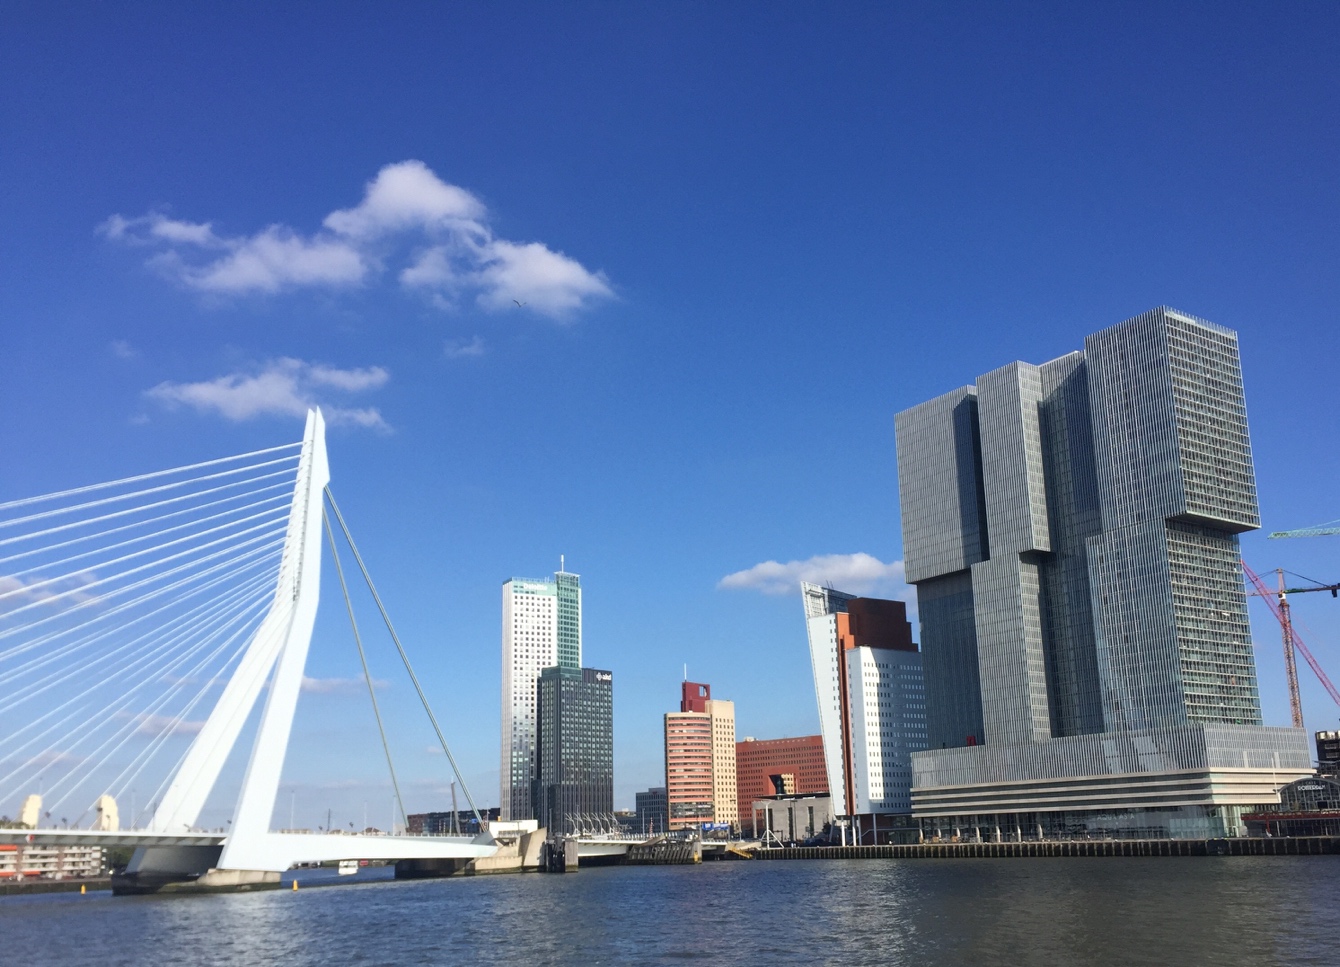 Вид на вантовый мост Erasmusburg. На заднем плане небоскреб Maastoren – самое высокое здание в Нидерландах.